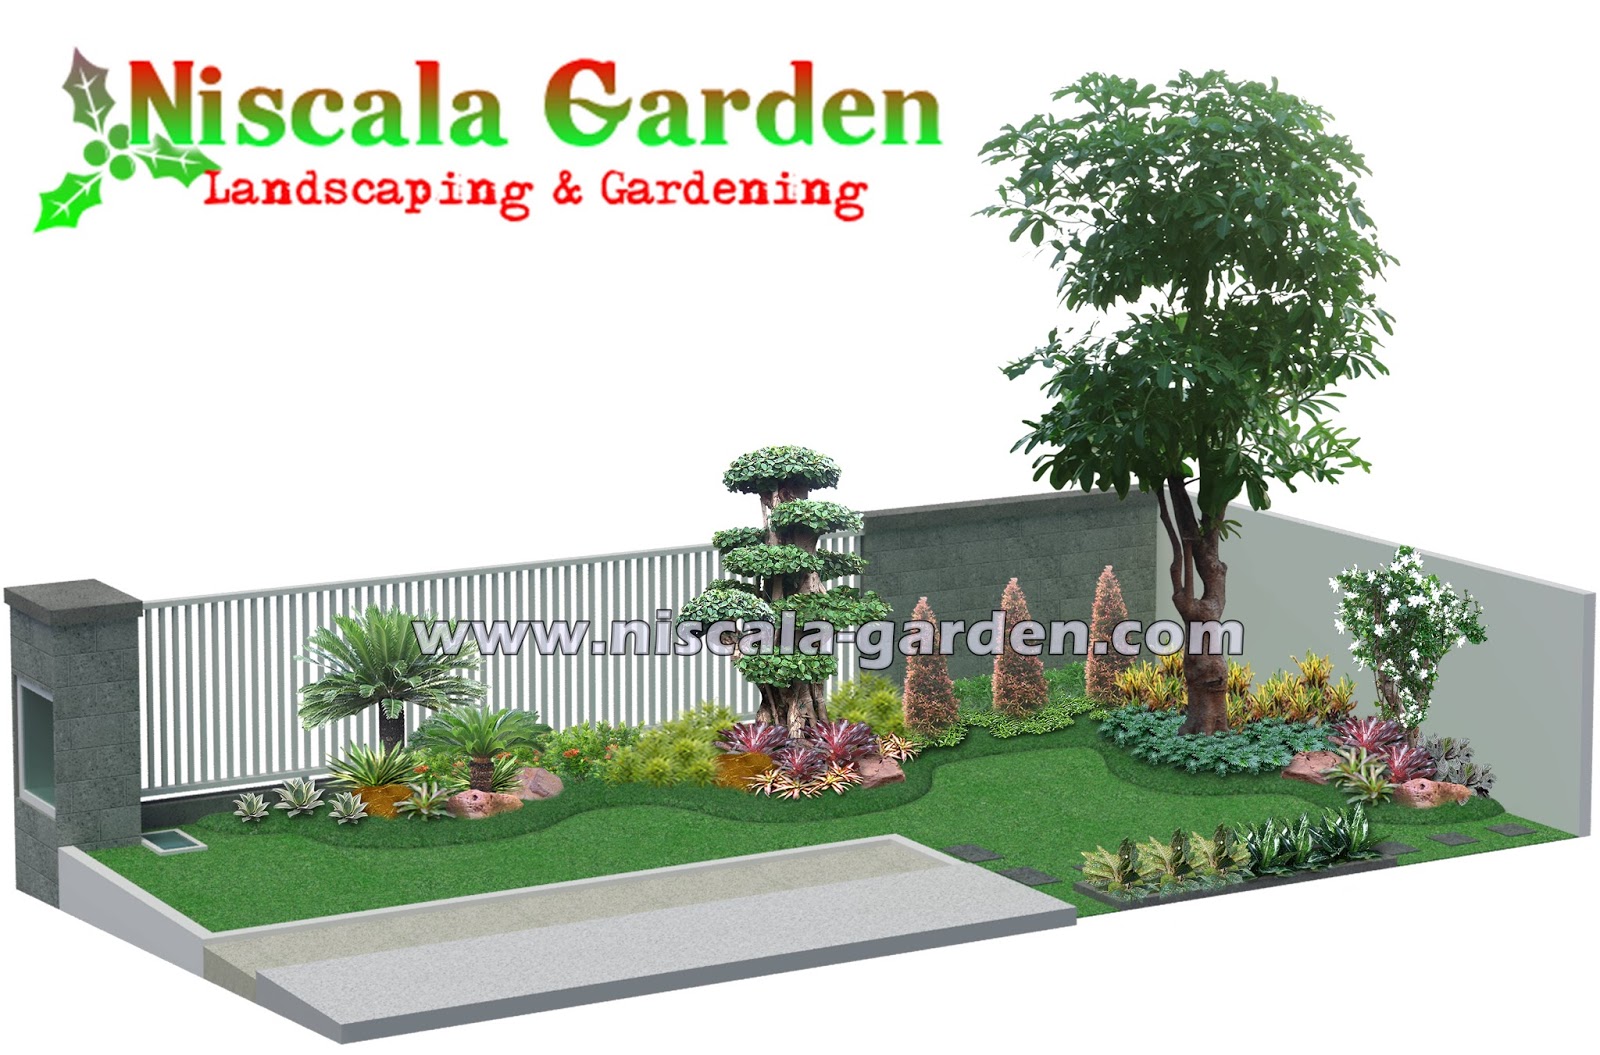 18 Desain Taman Mininalis NISCALA GARDEN Tukang Taman Surabaya